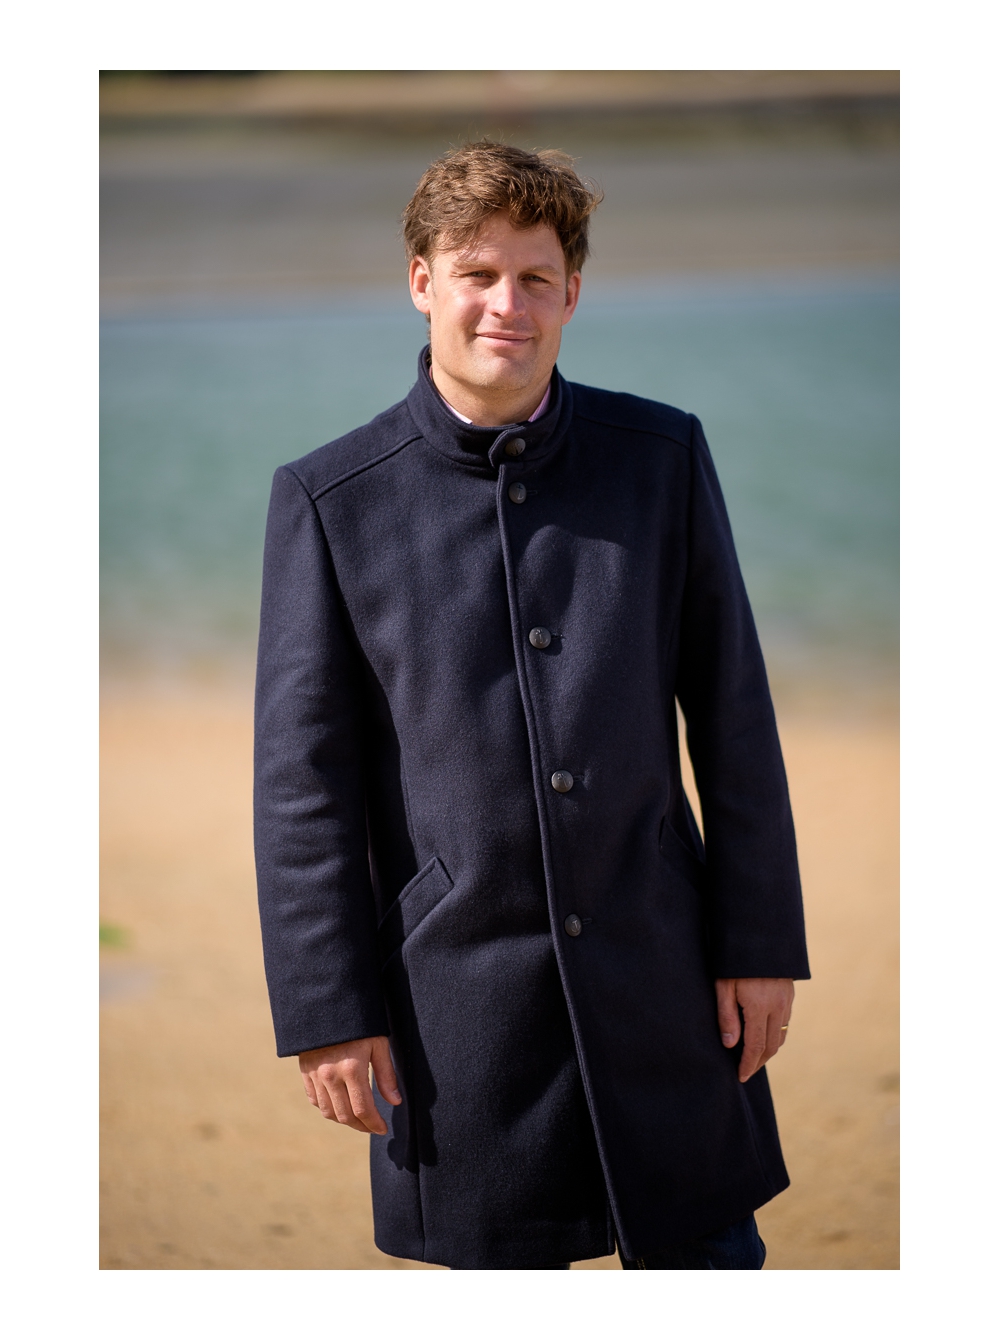 CALAIS veste homme 3/4 en laine imperméable - La boutique Dalmard Marine